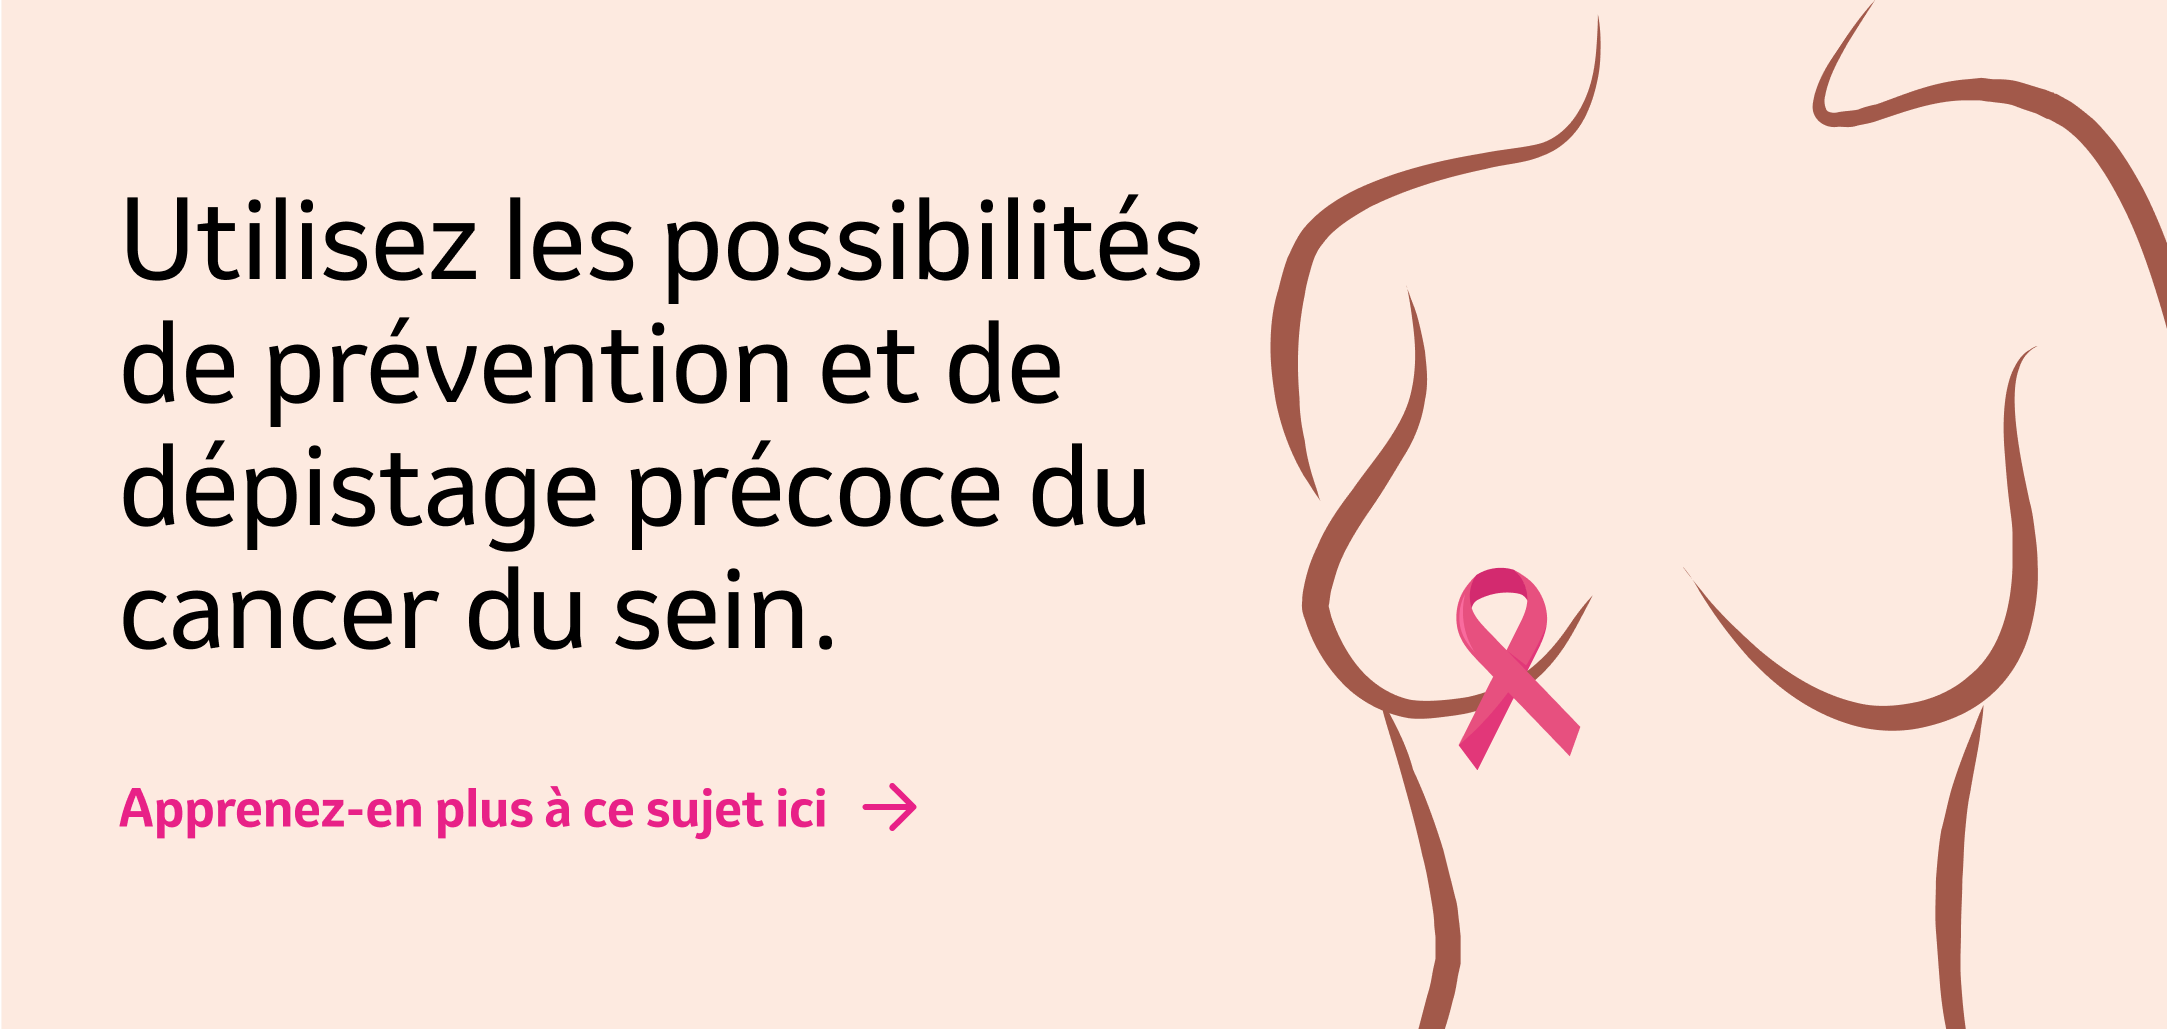 Banner "Profitez des possibilités de prévention et de dépistage du cancer du sein".